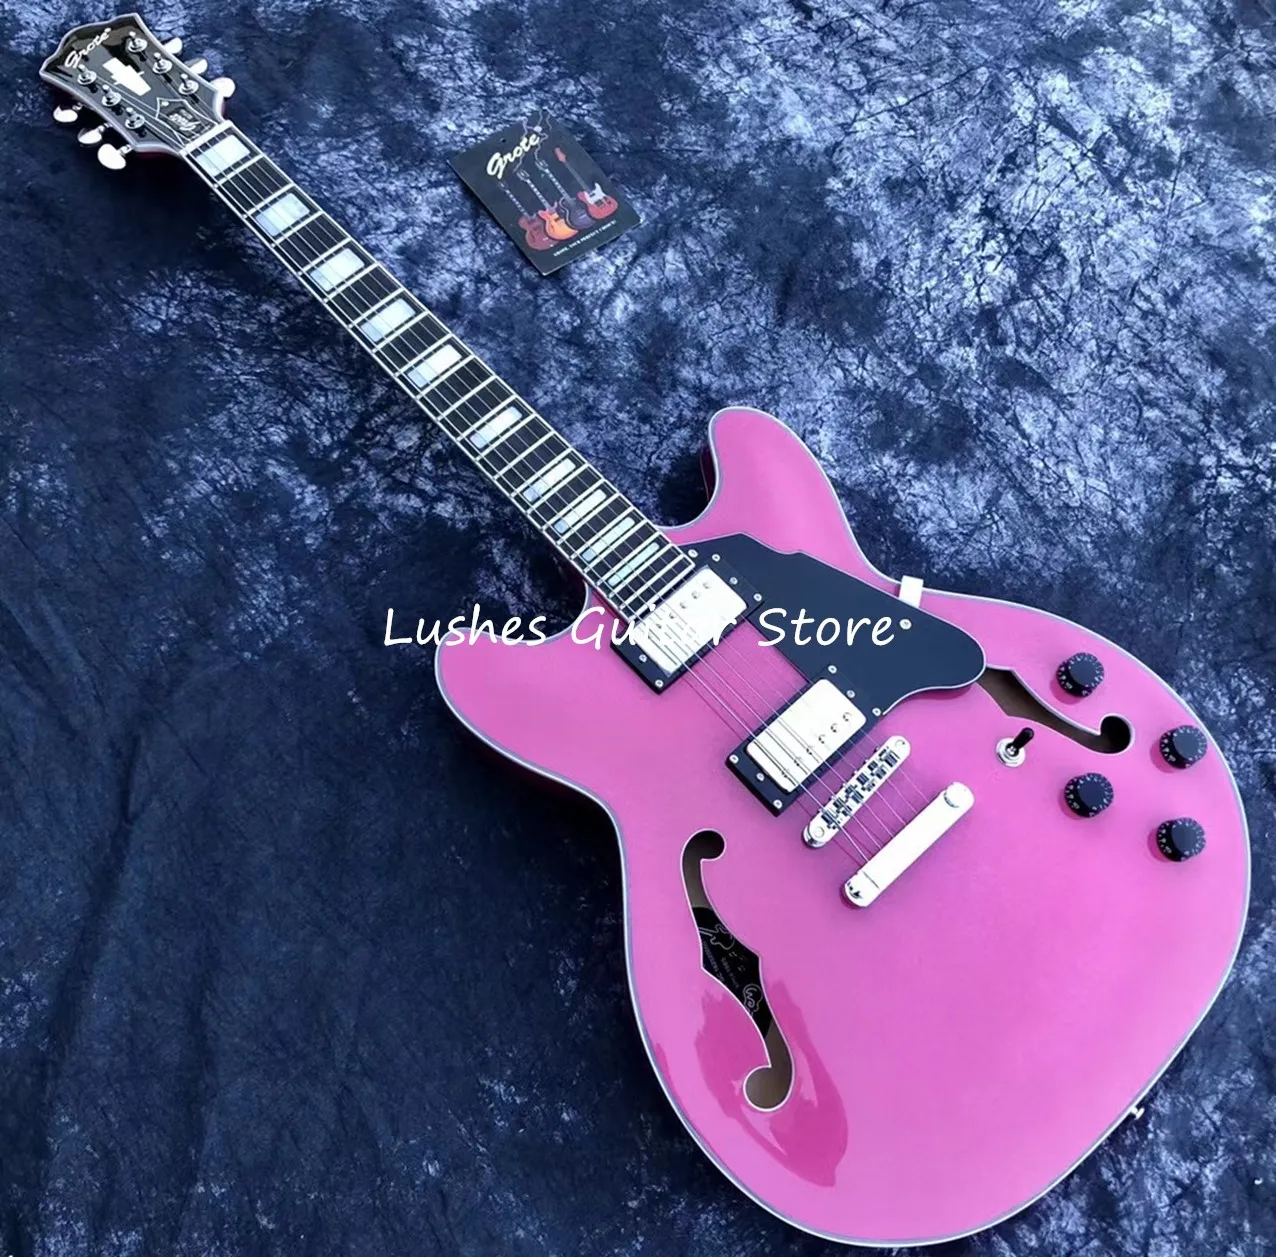 

Grote розовая электрическая гитара полуполый корпус гитара, джазовая Модель многослойная связывающая, бесплатная доставка